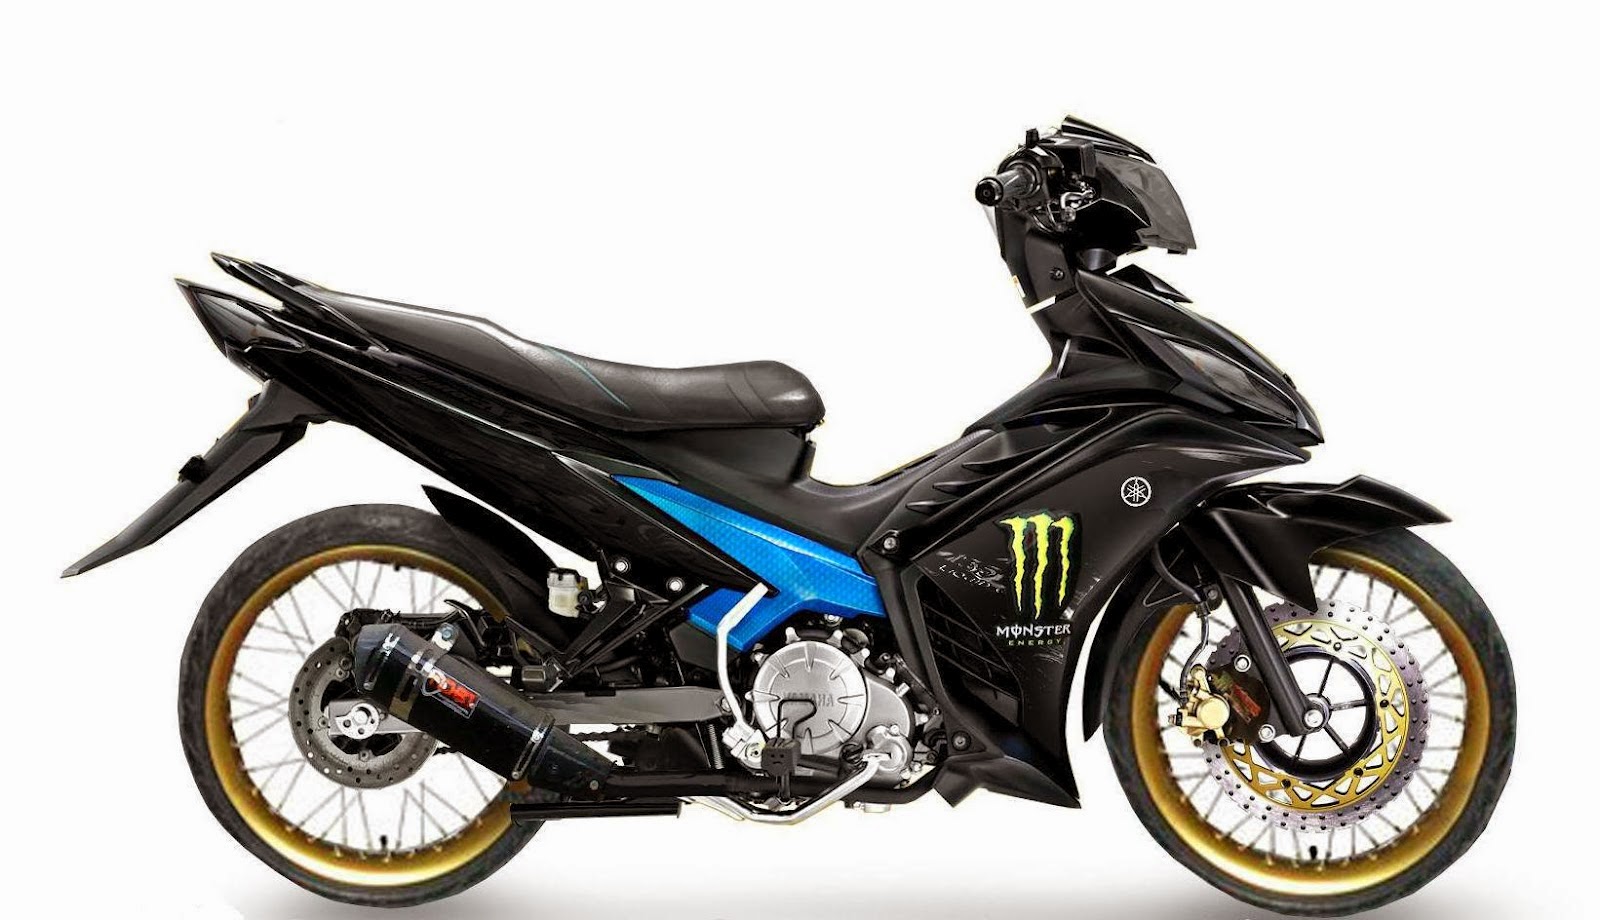 Modif Modifikasi Motor Yamaha New Jupiter Mx 2013